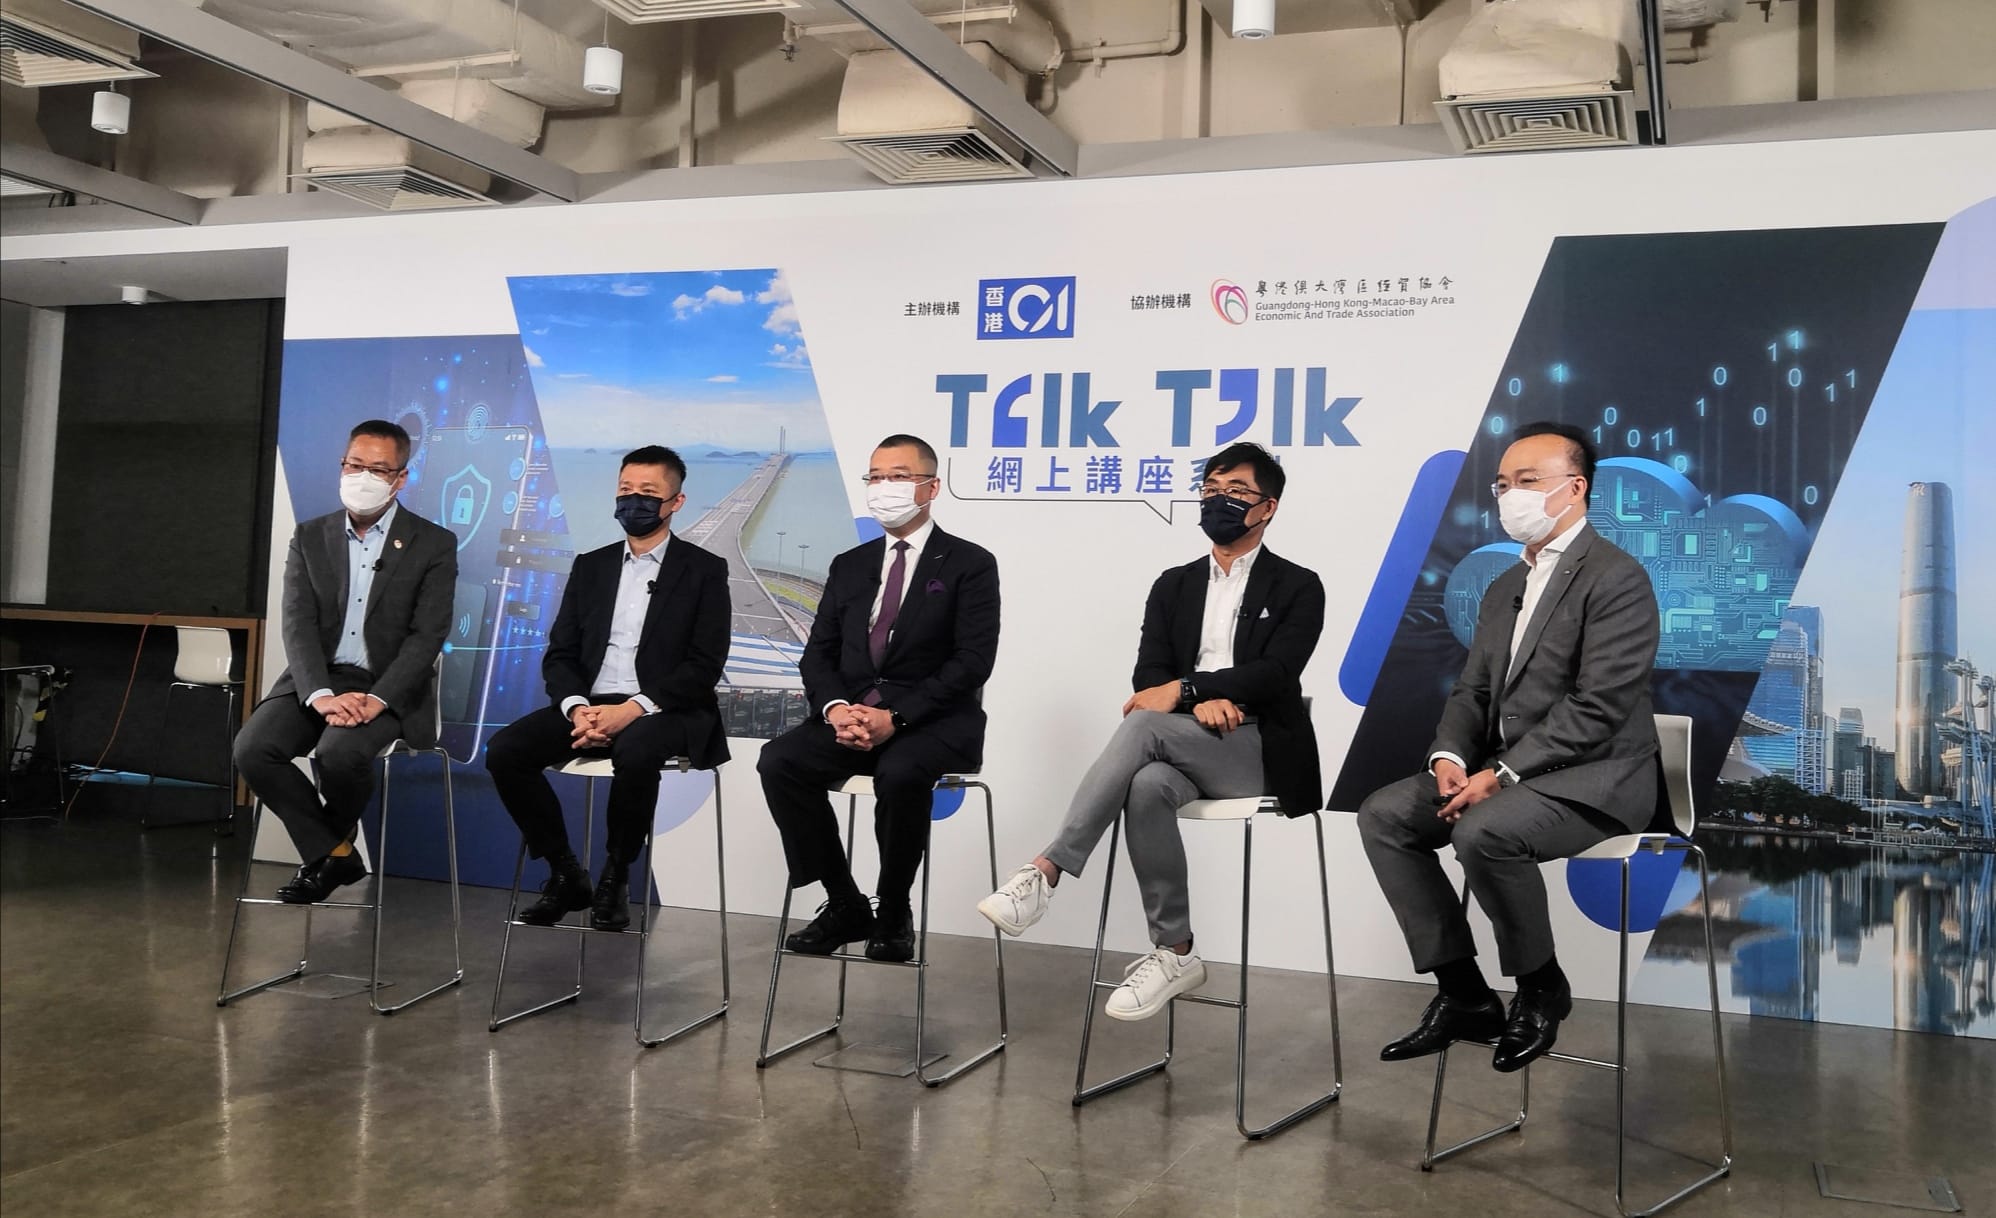 香港01 Talk Talk 網上講座 – GBA經貿融通